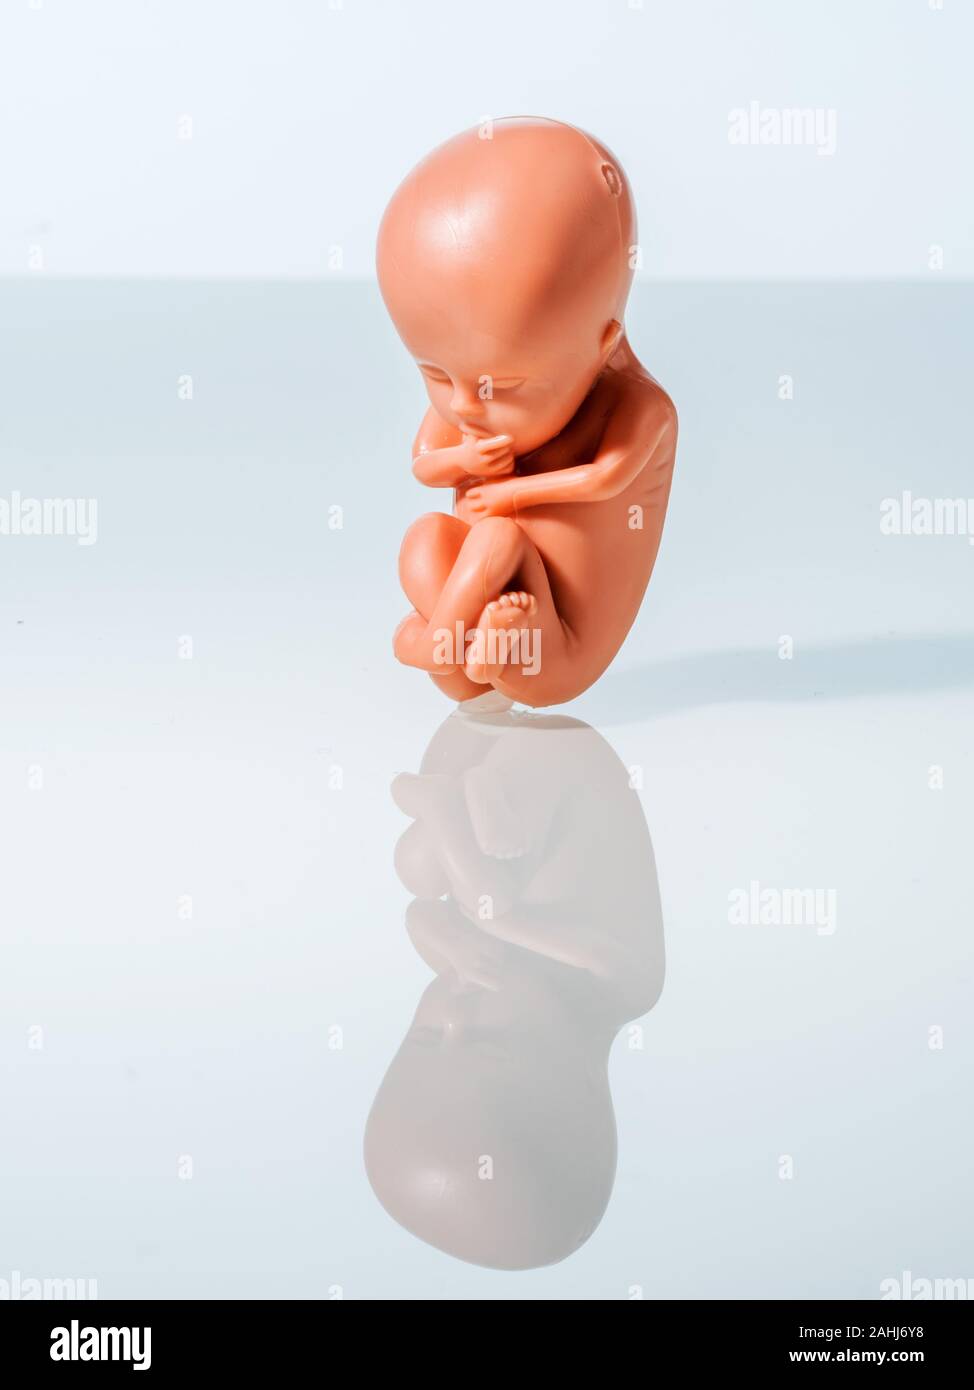 Ein 12-Wochen alter Emybro aus Plastik. Modell für Schwangerschaft, Abtreibung und Verhütung. Schutz von ungeborenem Leben. Stock Photo